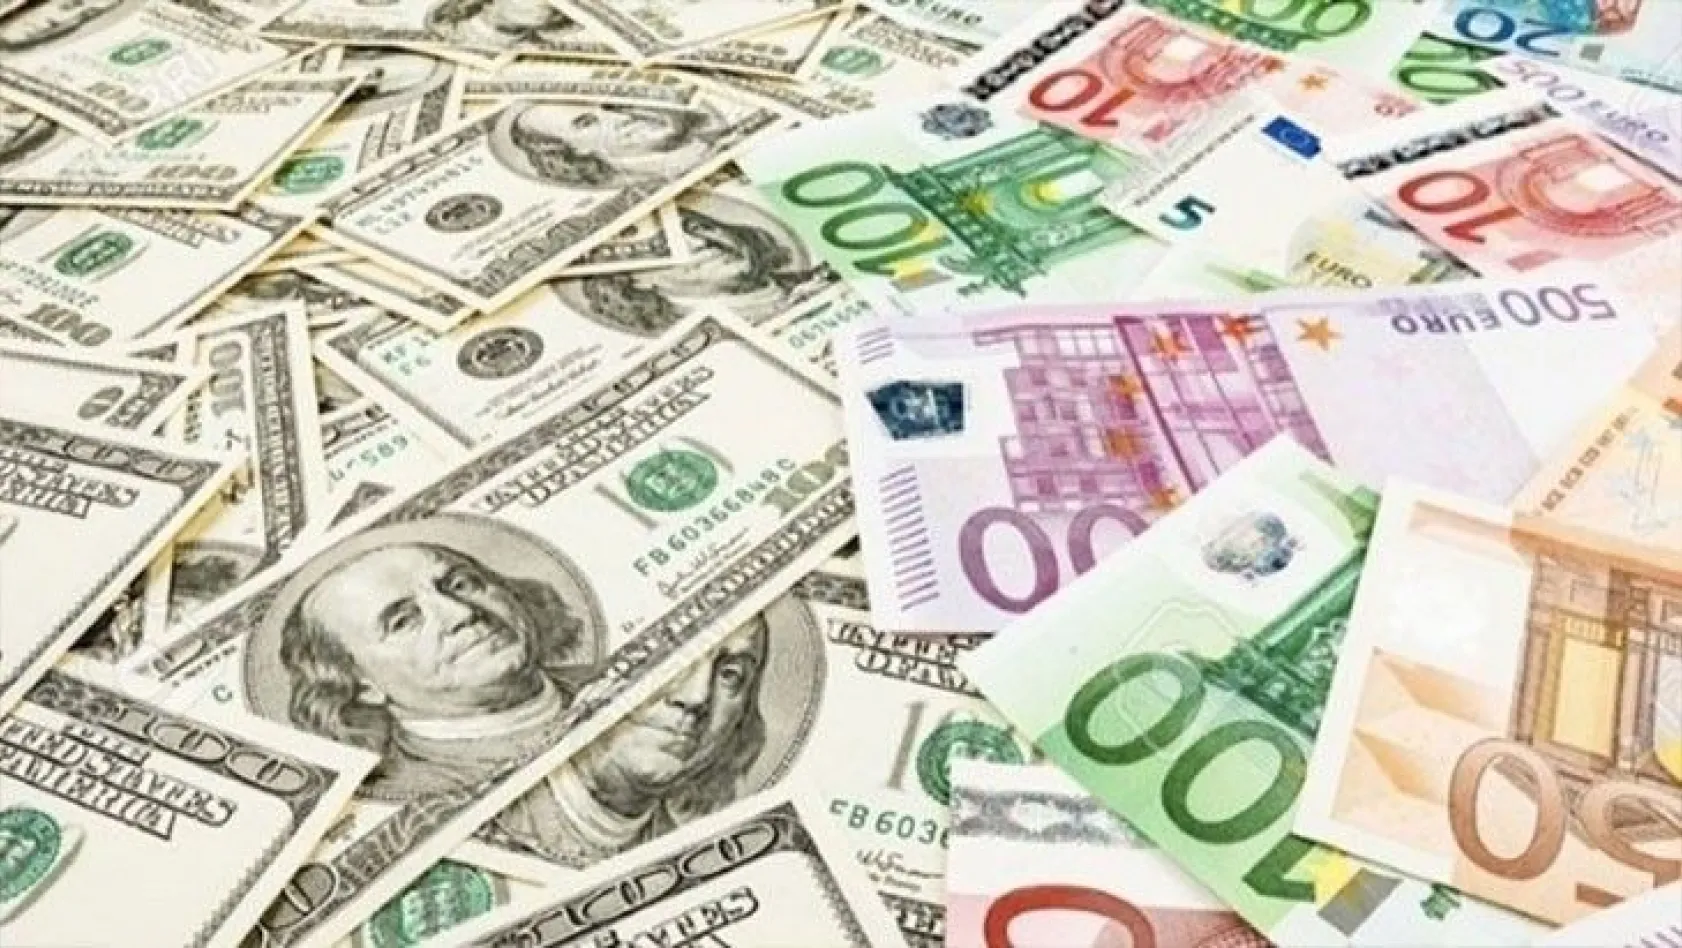 Haftanın ilk işlem günü dolar ve euro fiyatları ... 8 Haziran 2020